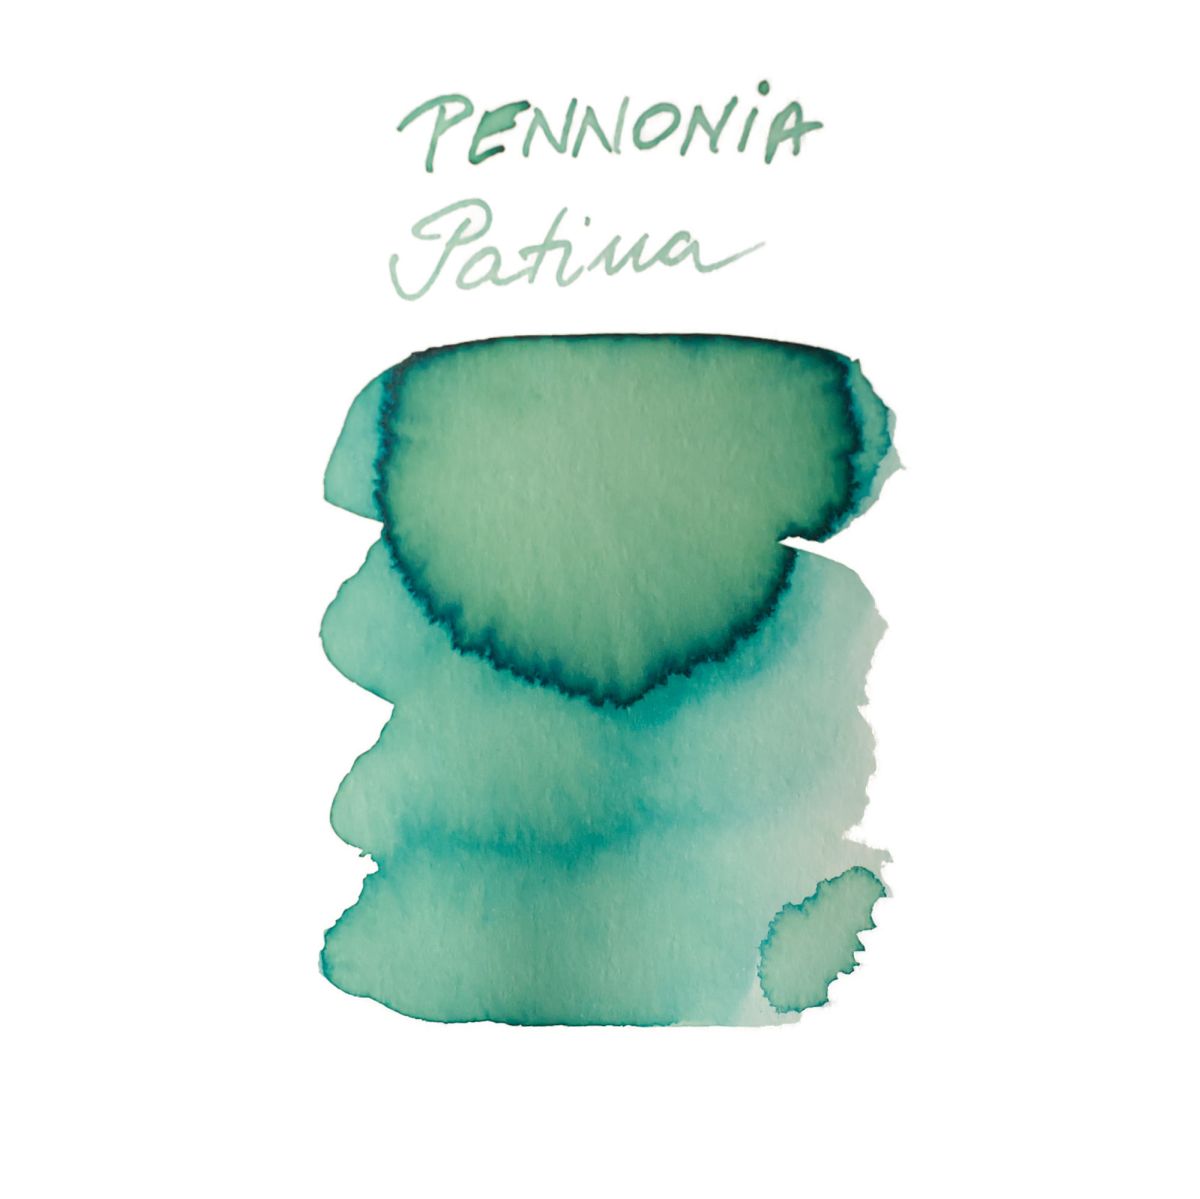 Pennonia Patina